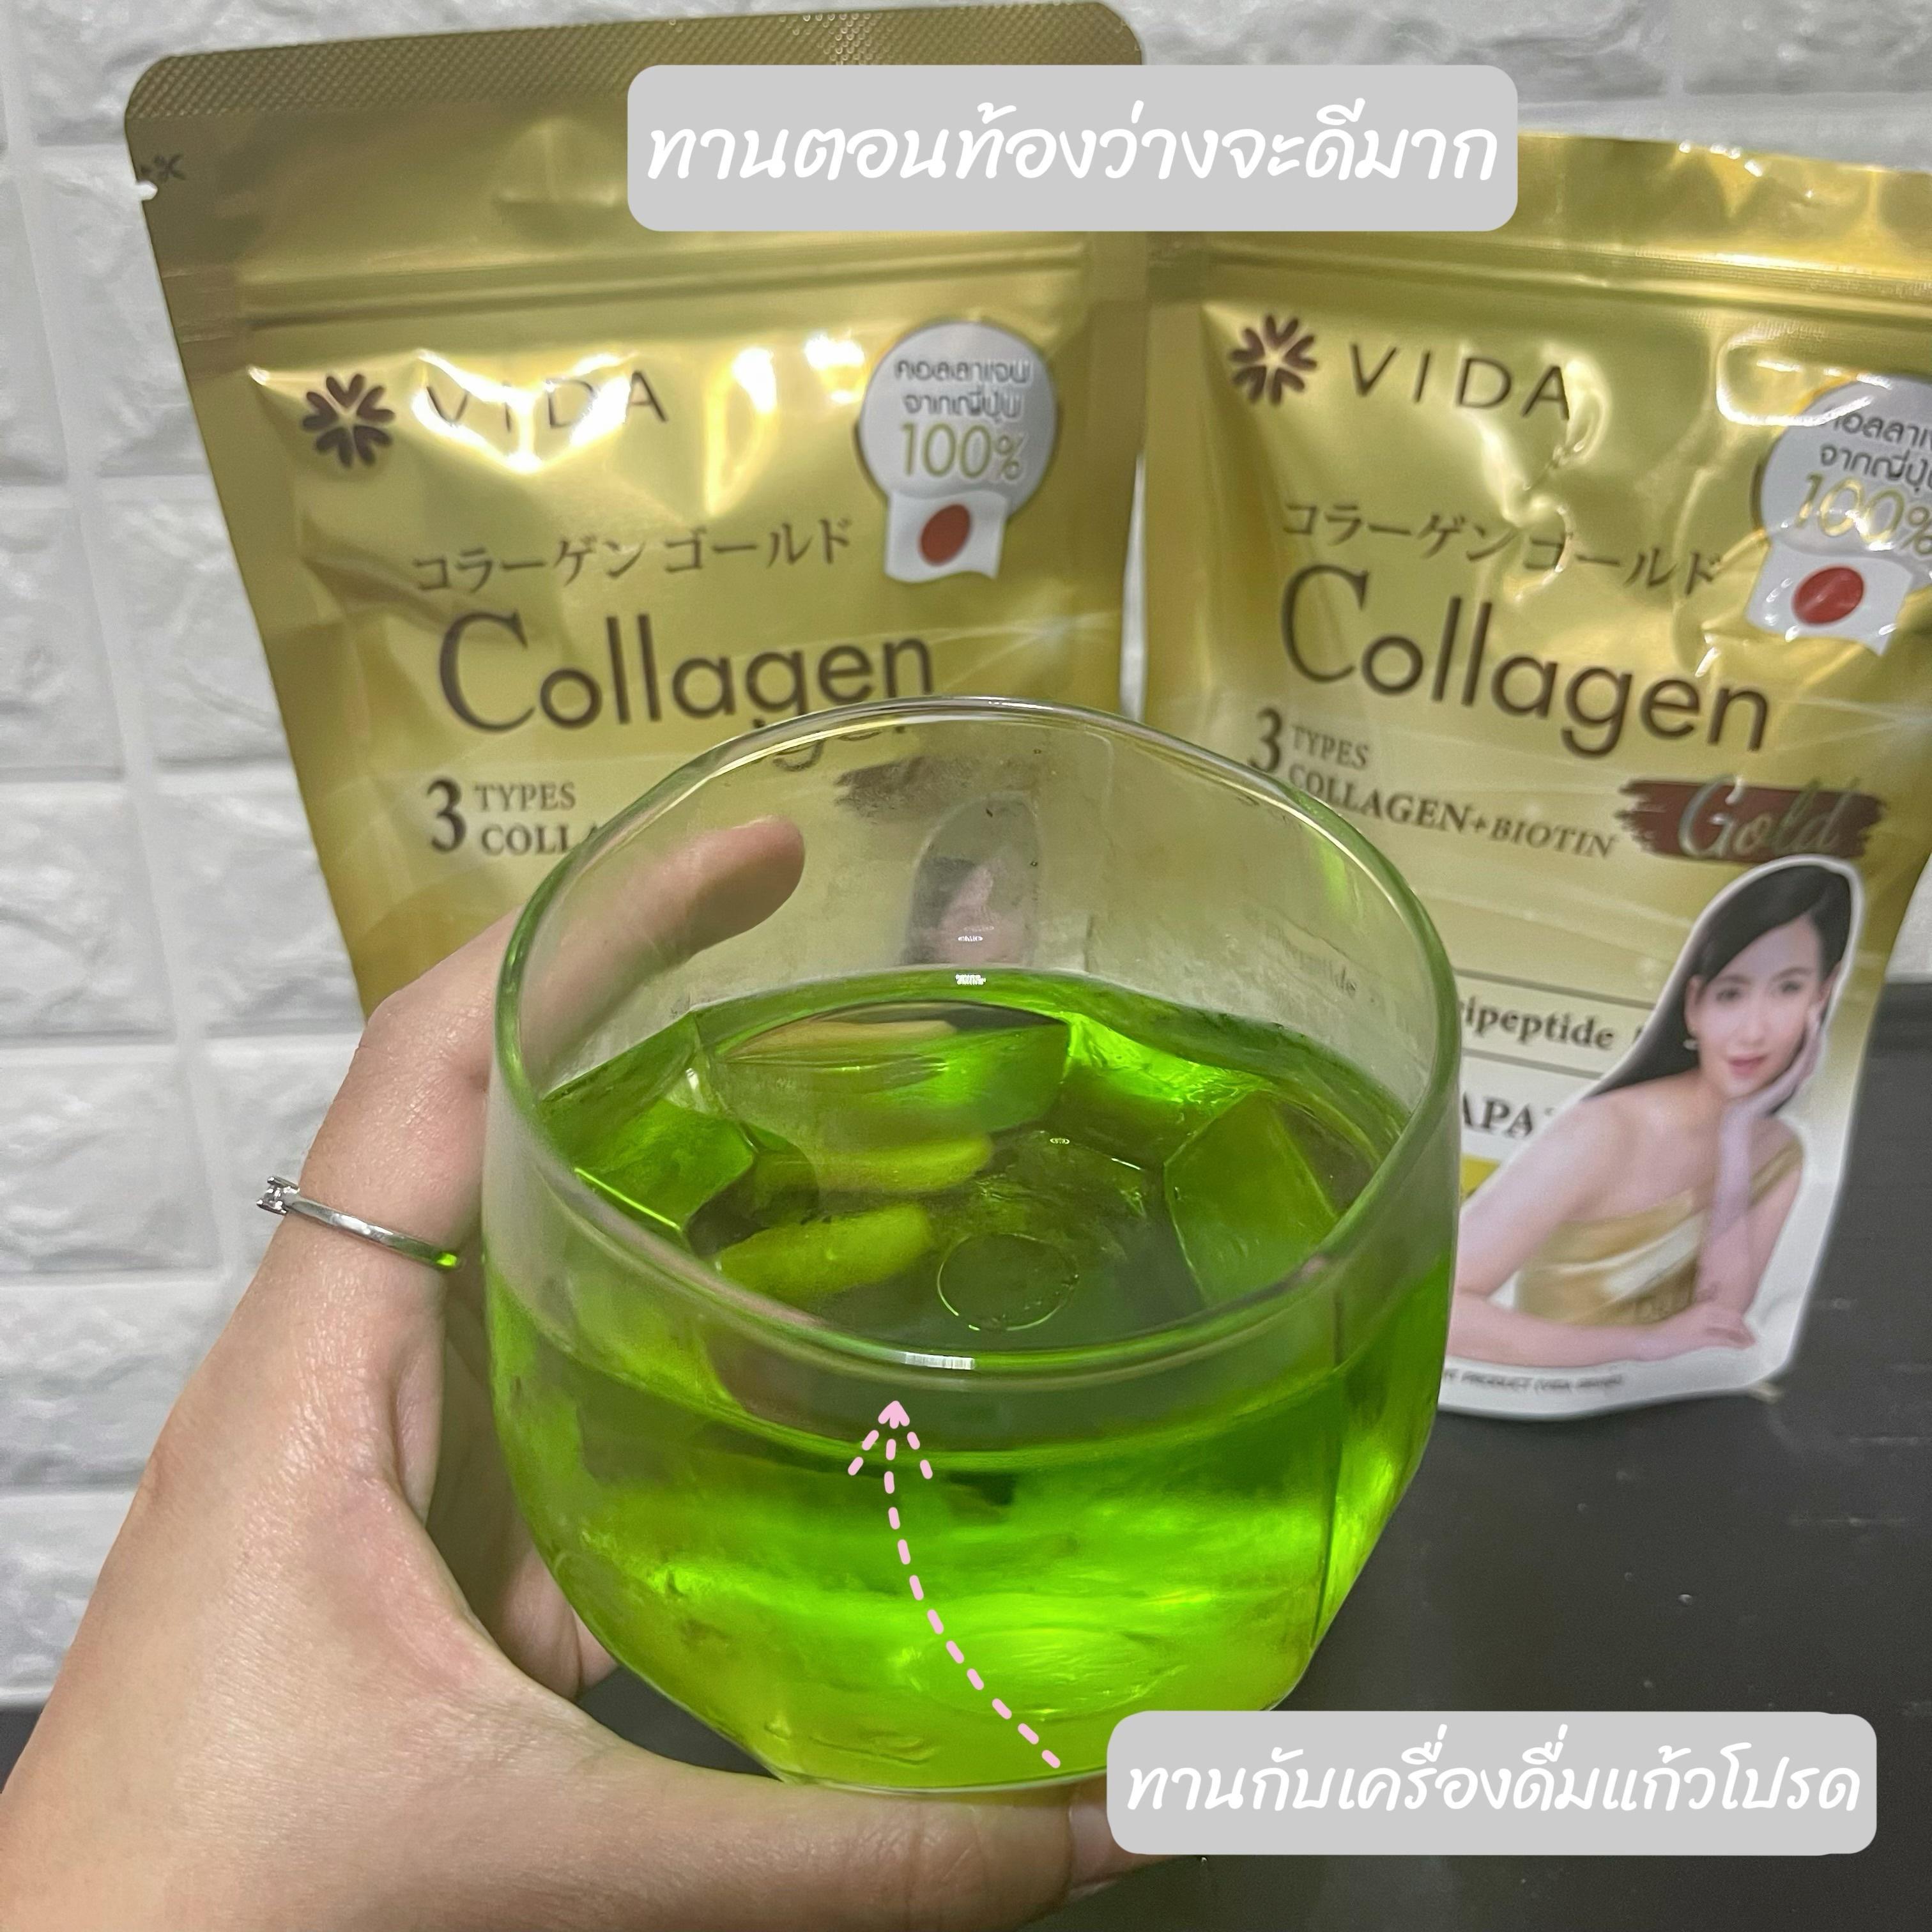 ภาพหน้าปก คอลลาเจนตัวโปรด VIDA Collagen gold จากคอลลาเจนจากญี่ปุ่น ที่:2